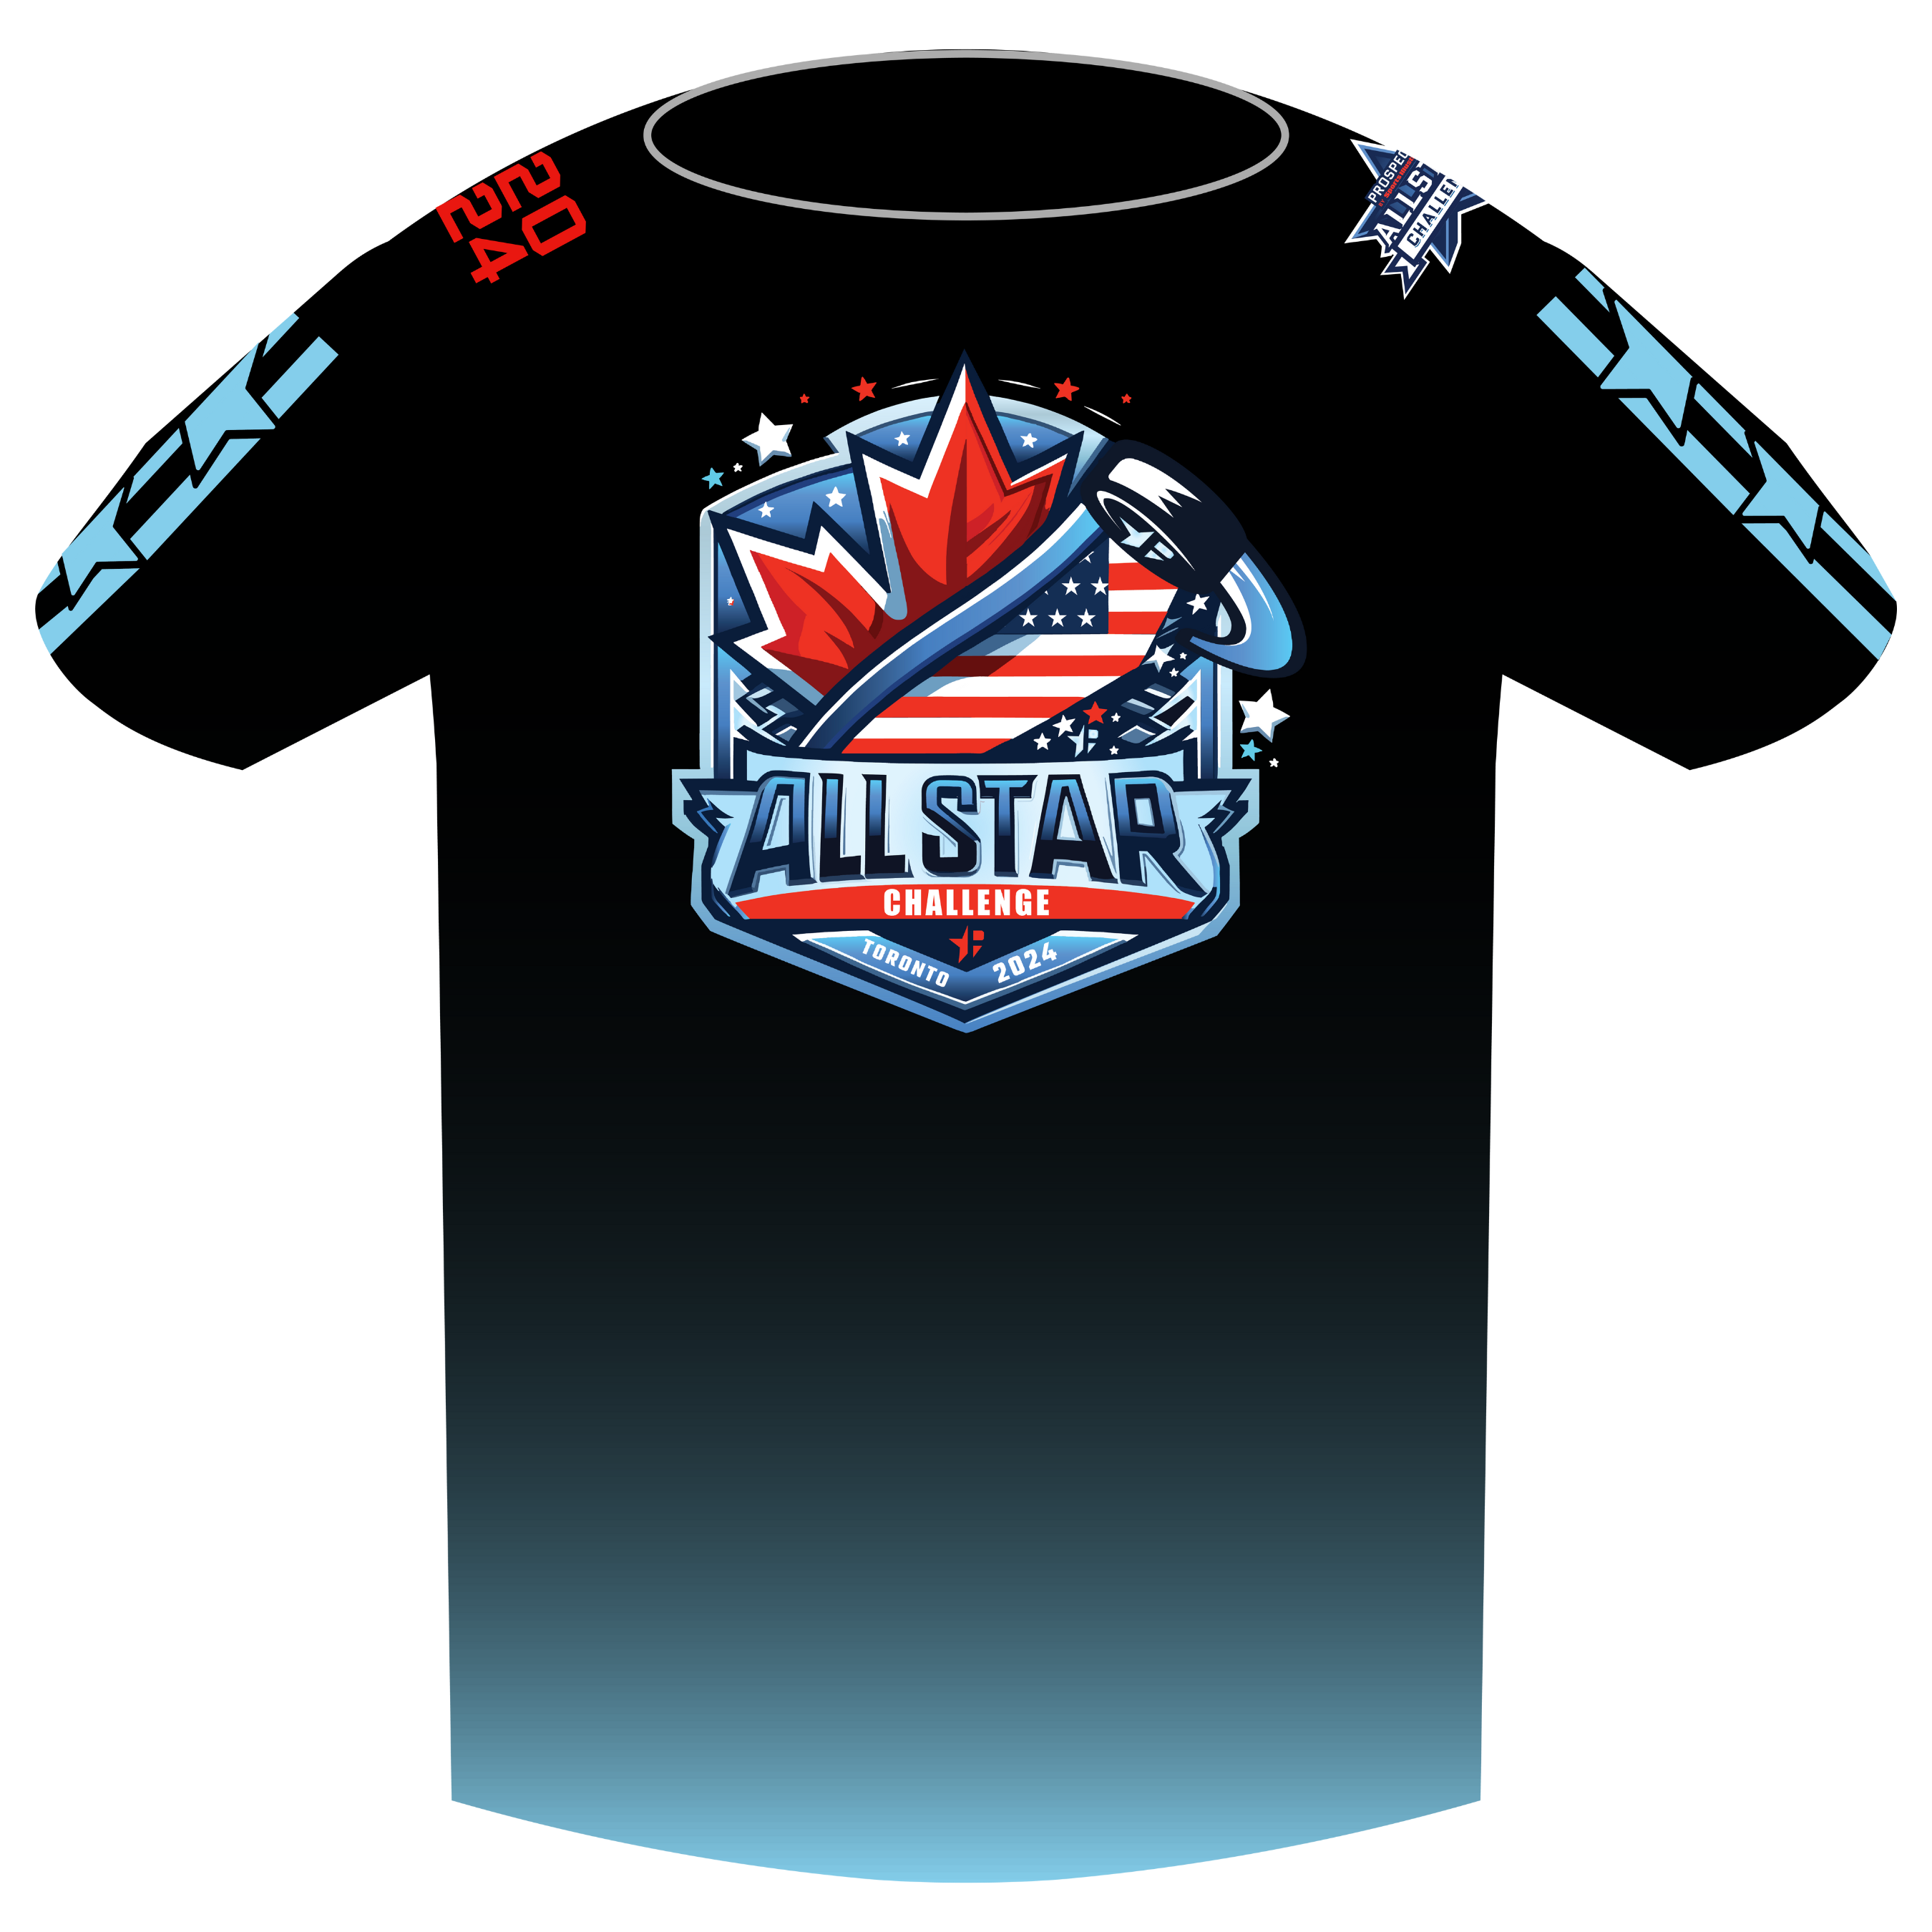 All Star Official Shirt